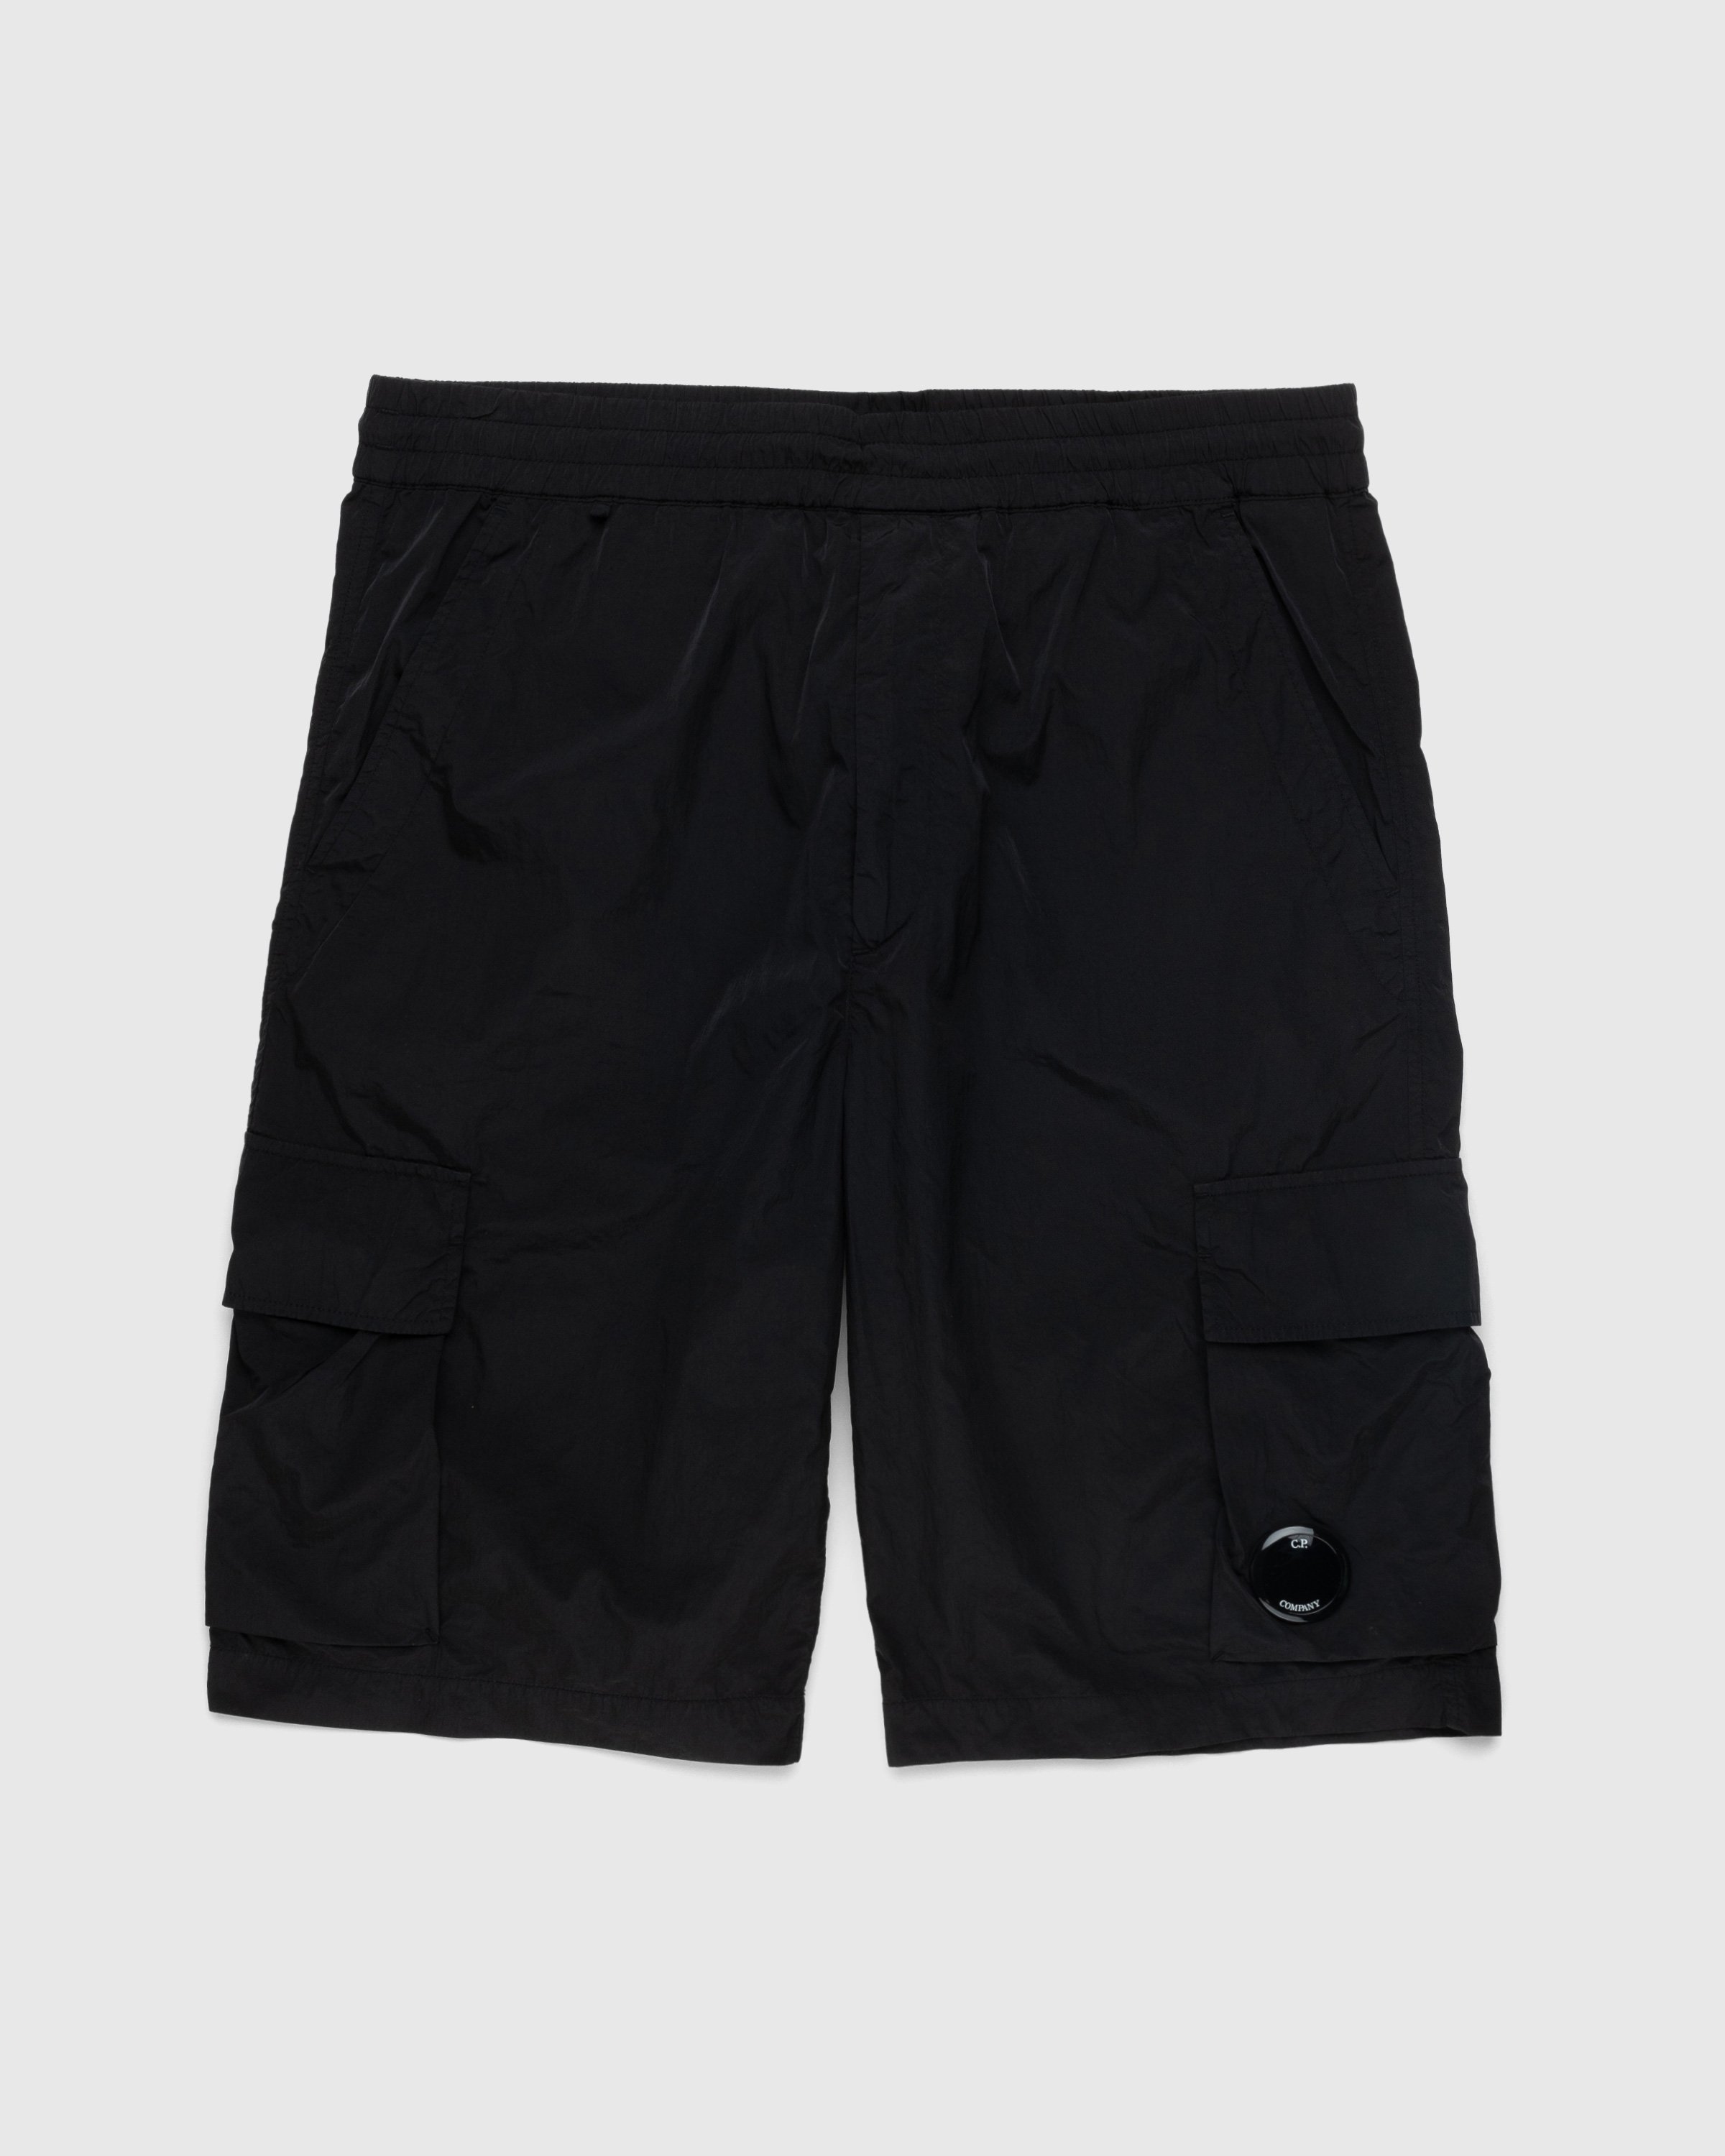 C.P. Company - Chrome-R Cargo Shorts Black - Clothing - Black - Image 1